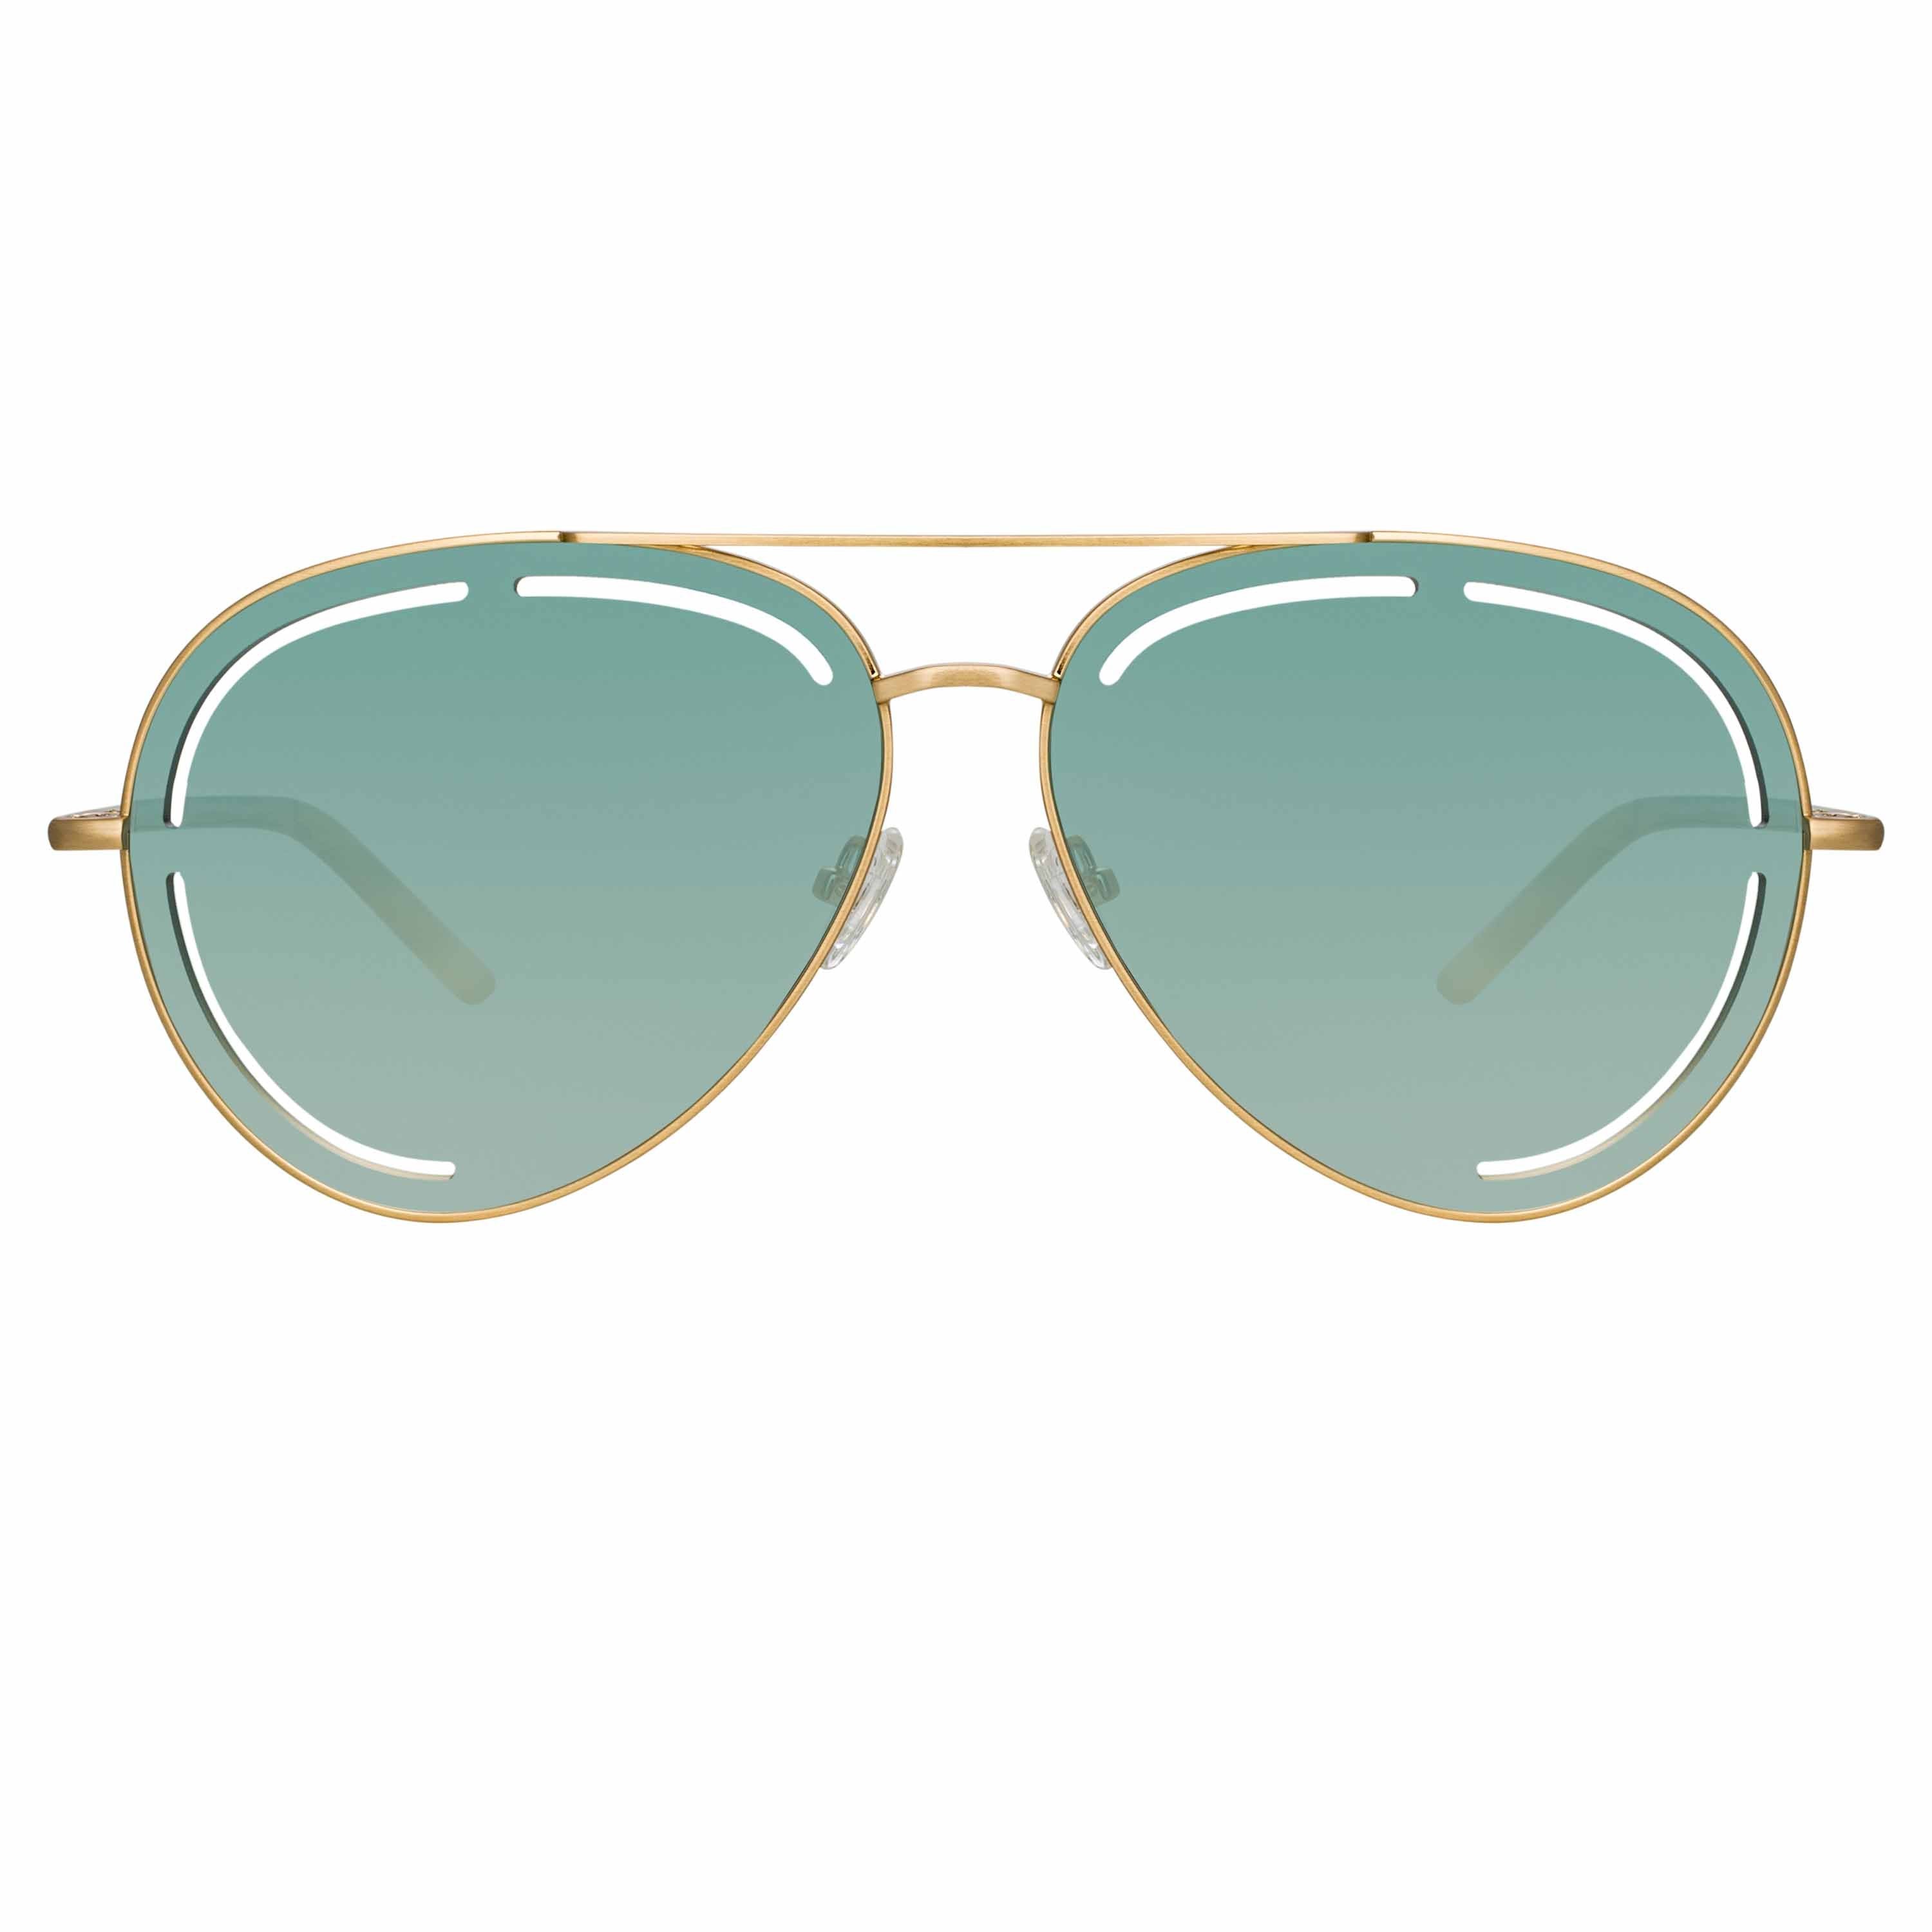 Color_MW264C5SUN - Matthew Williamson Foxglove Sunglasses in Light Gold and Green